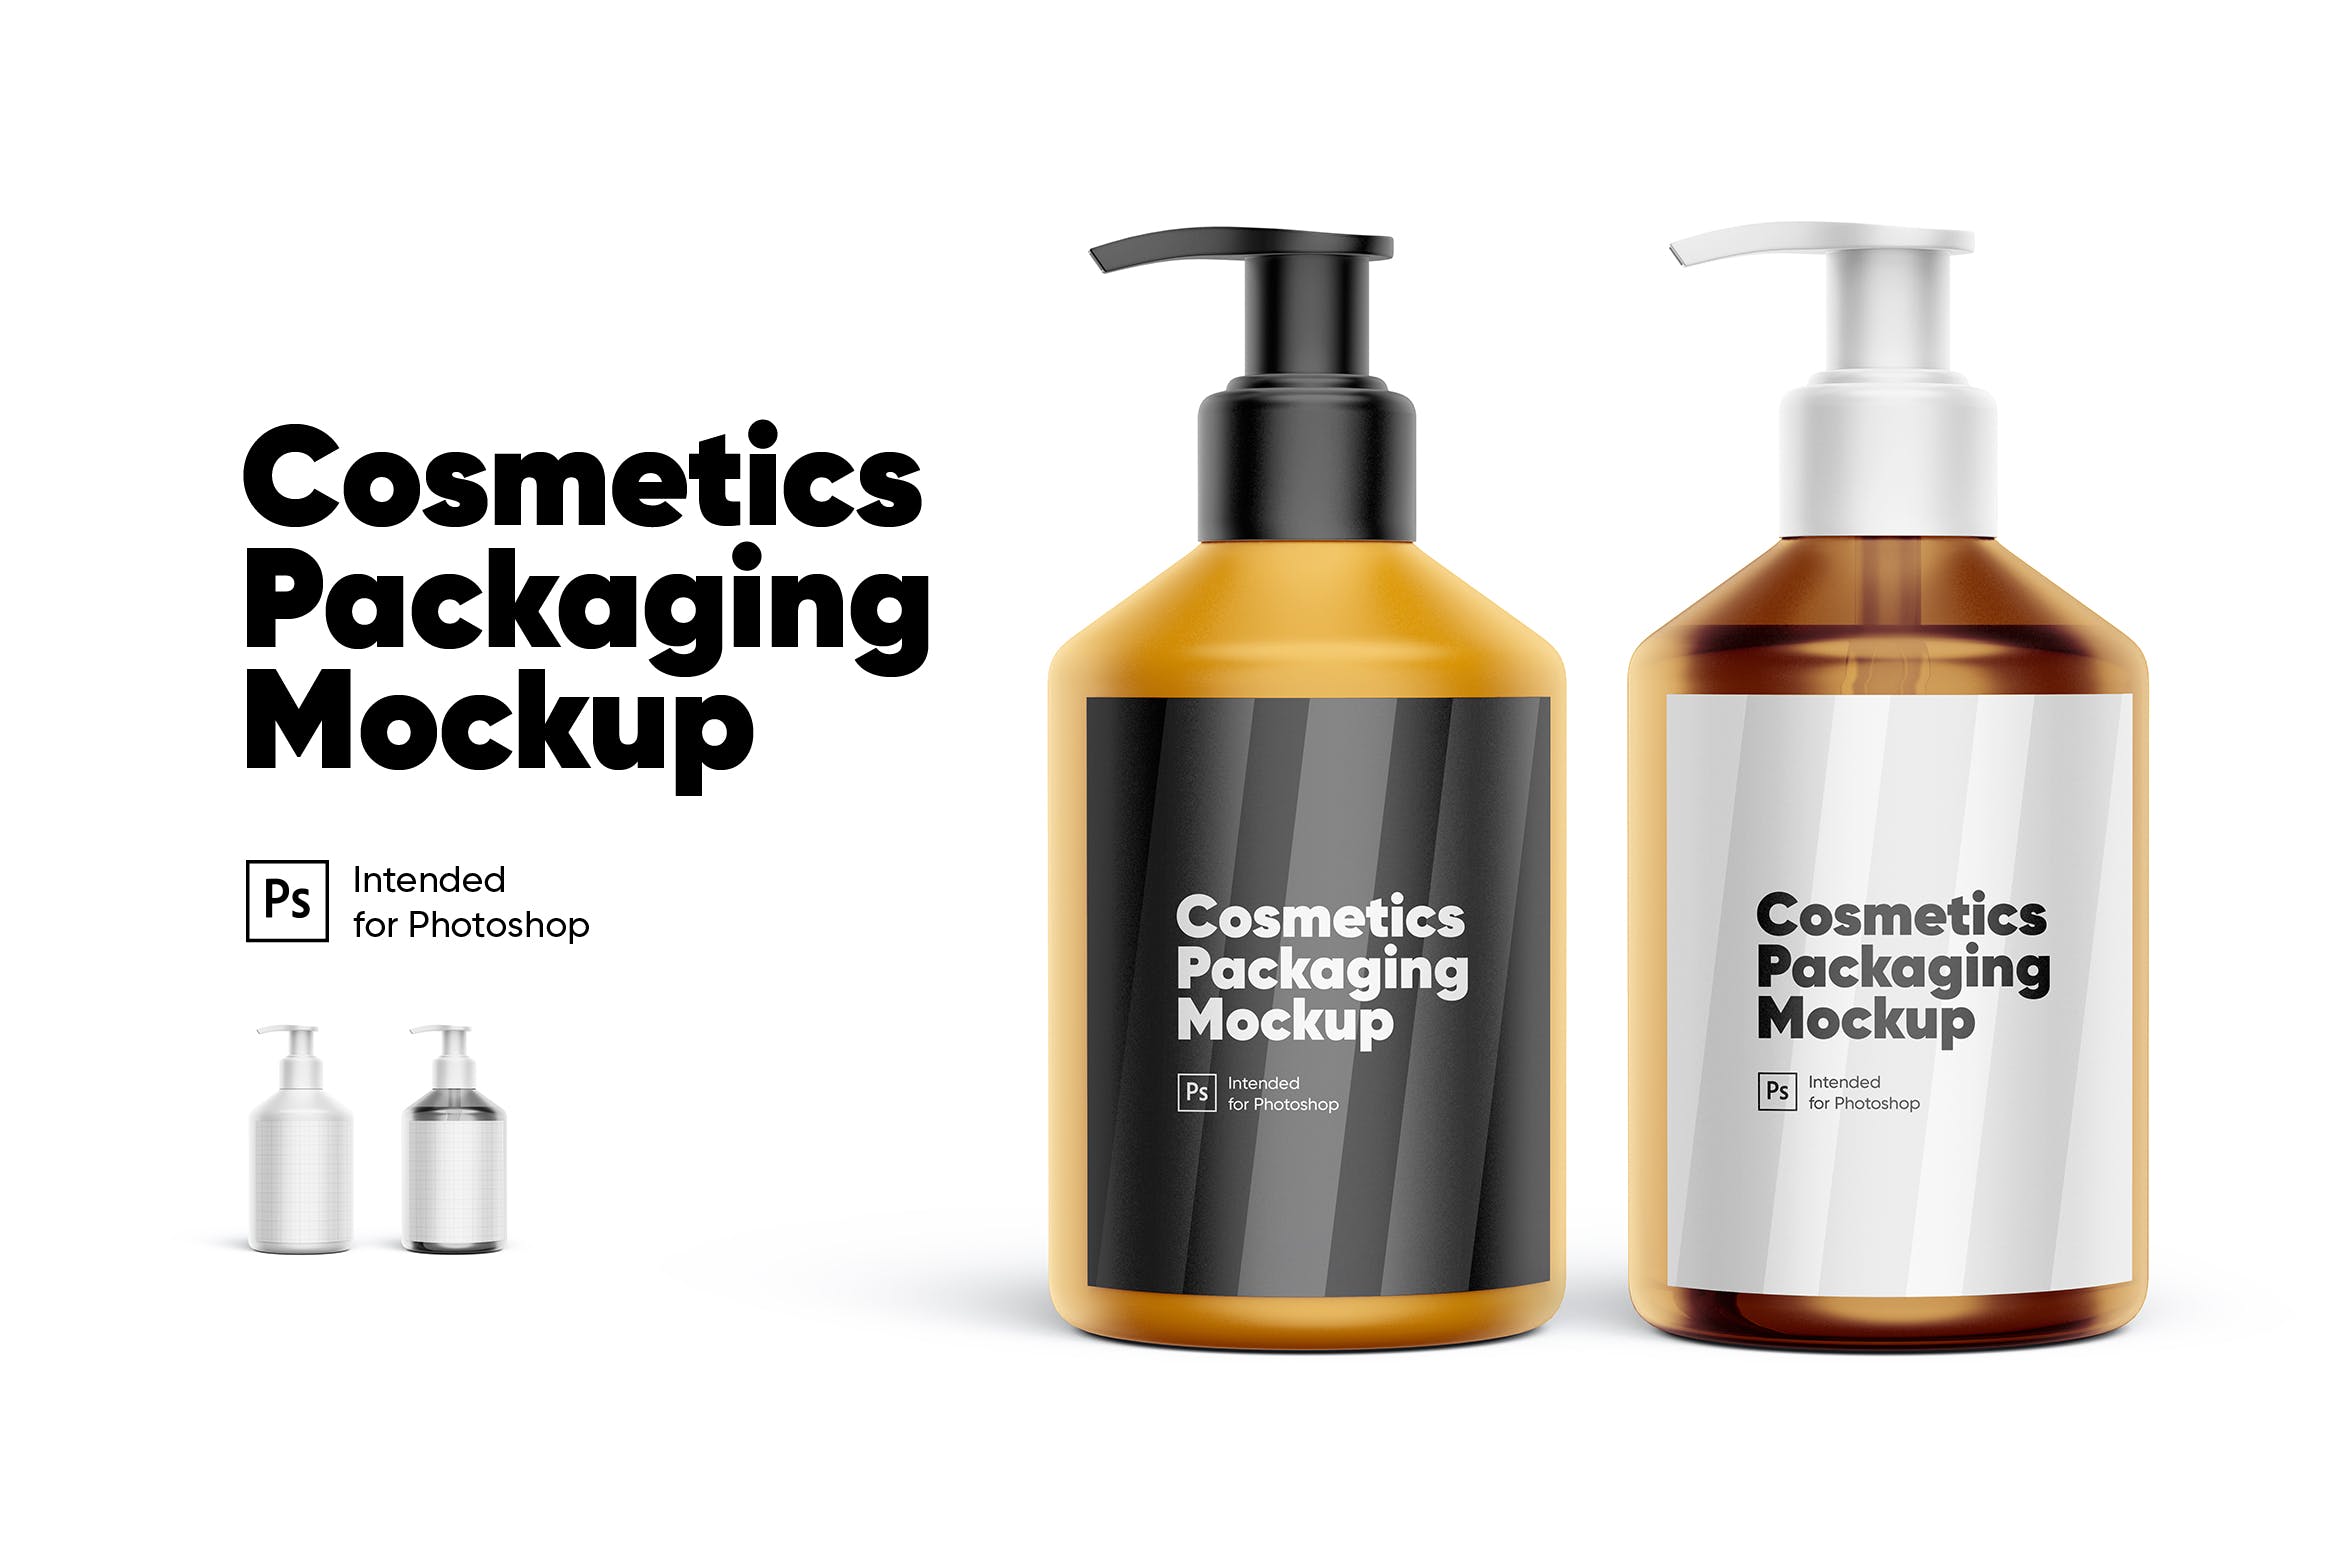 化妆品包装按压瓶设计样机 Cosmetics Packaging Mockup设计素材模板